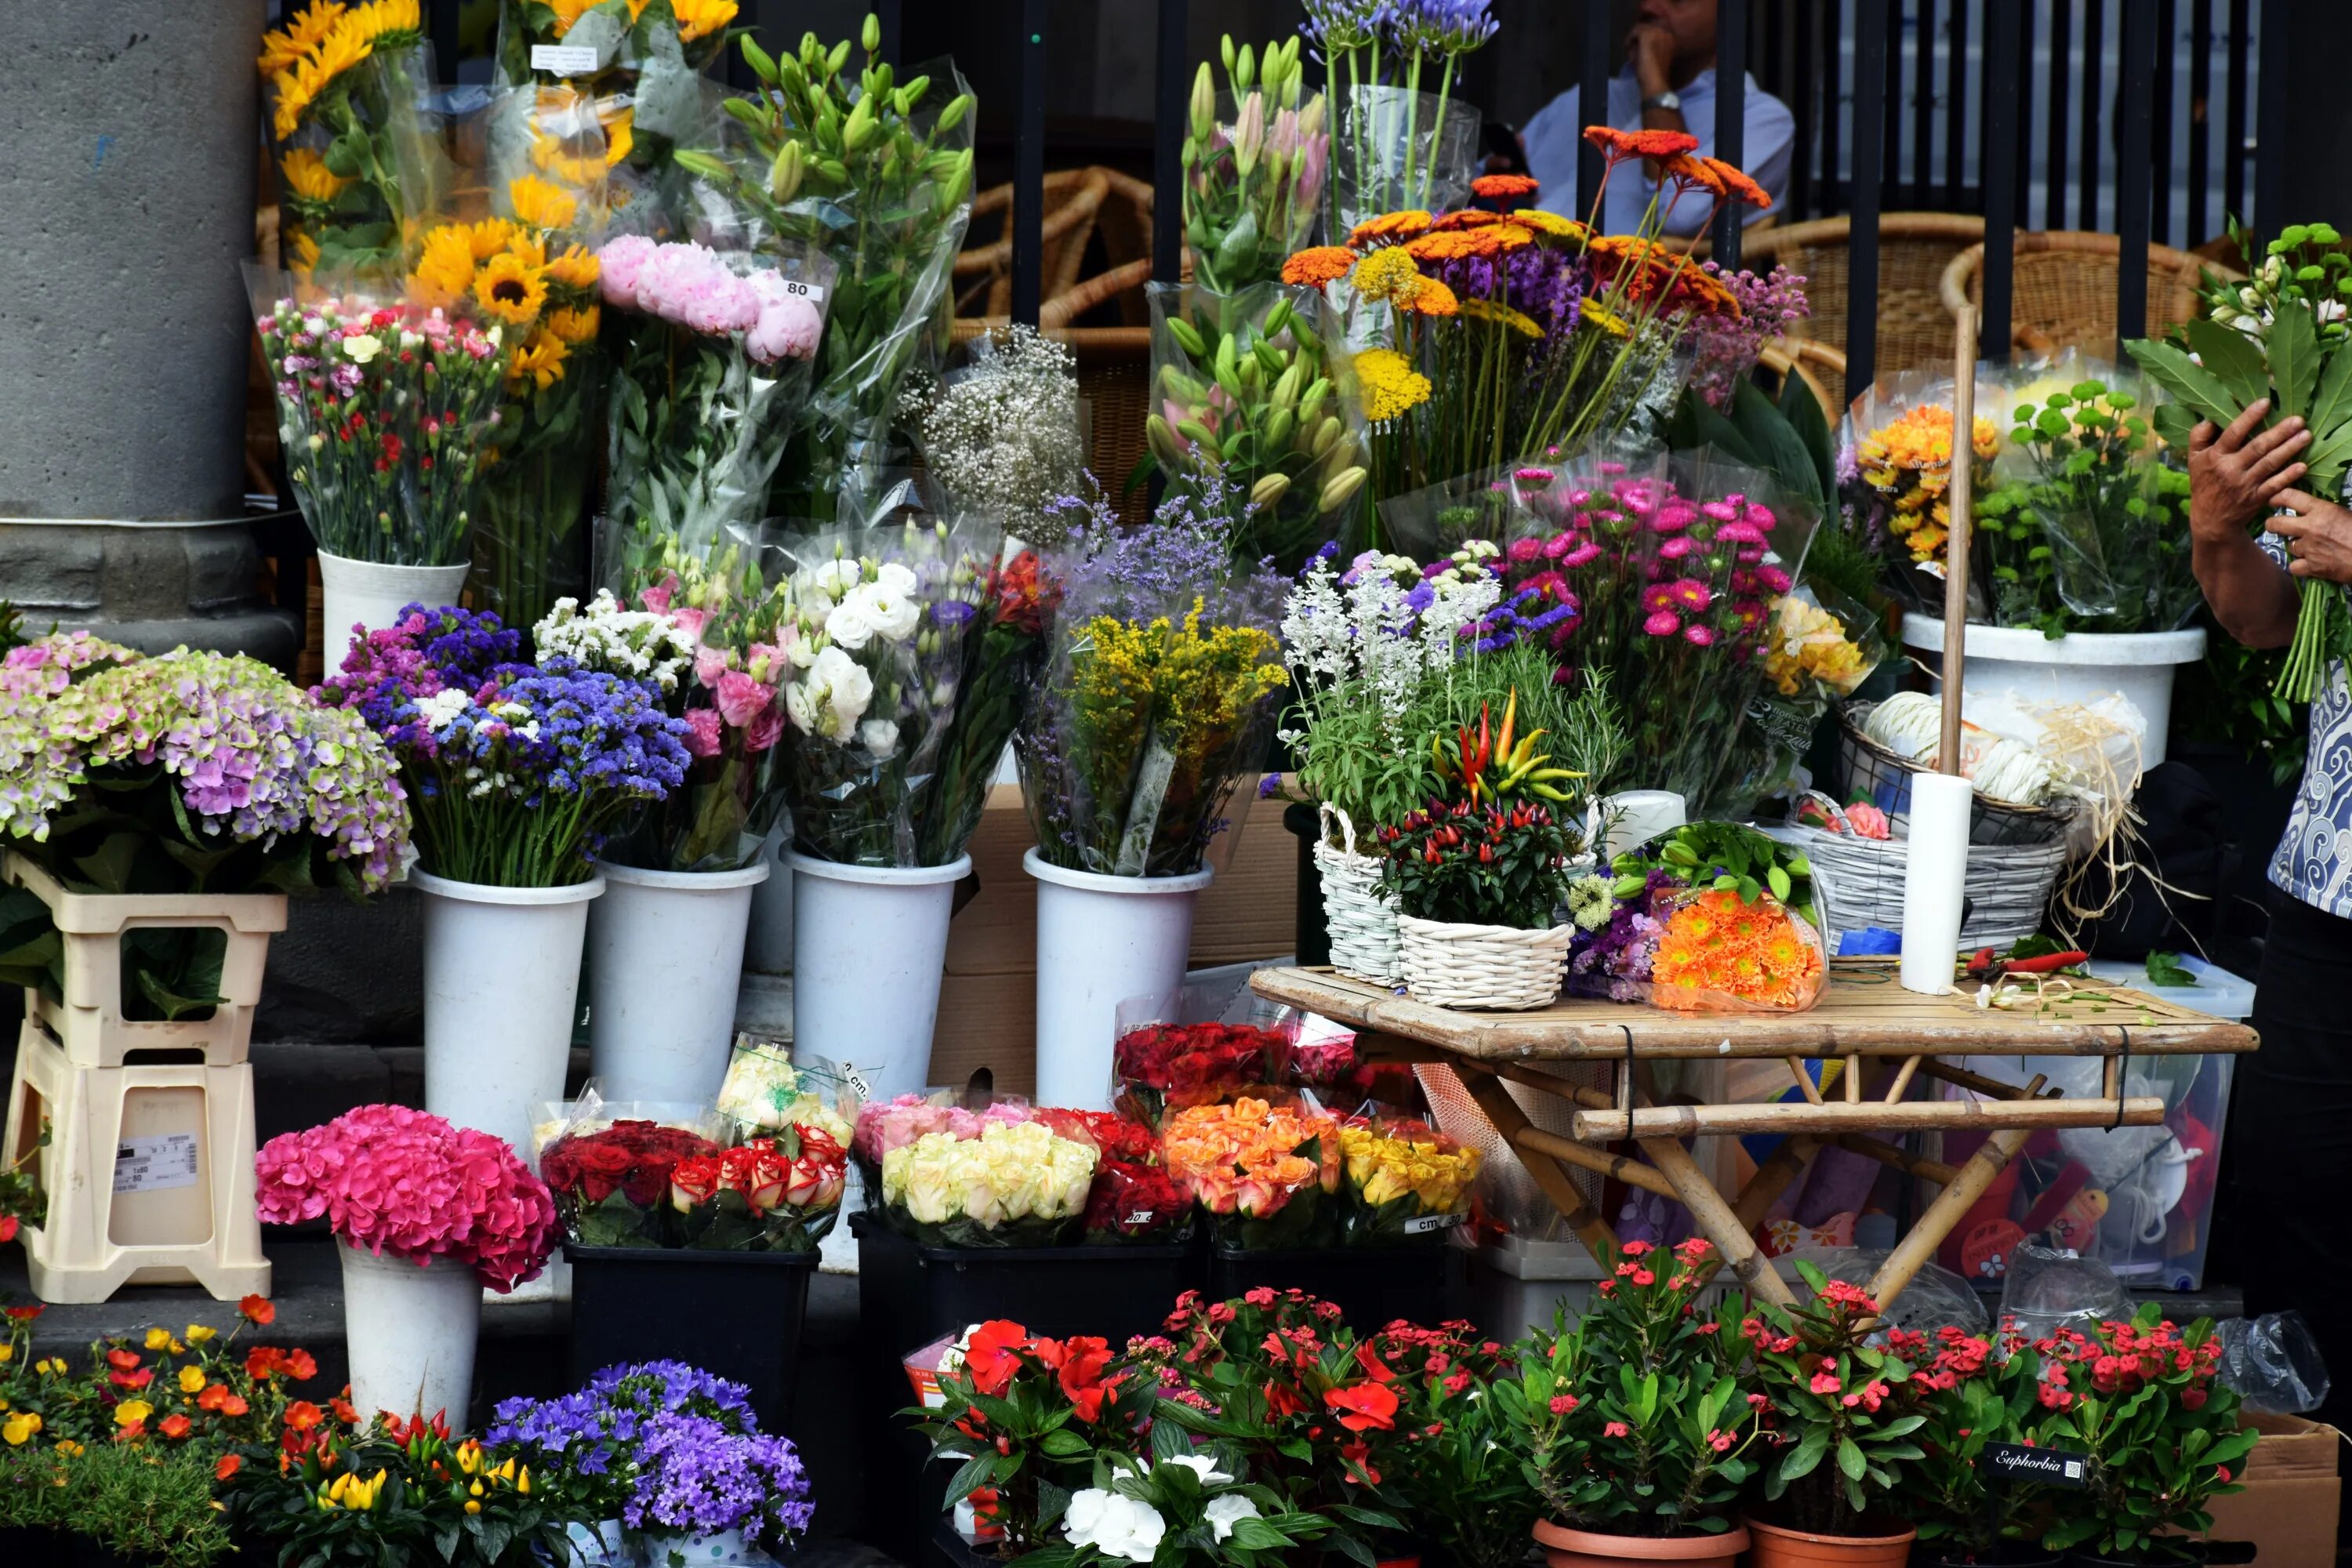 Цветы на рынке. Цветочный магазин на рынке. Цветочный базар. Букеты цветов в магазине. Какими цветами торгуют